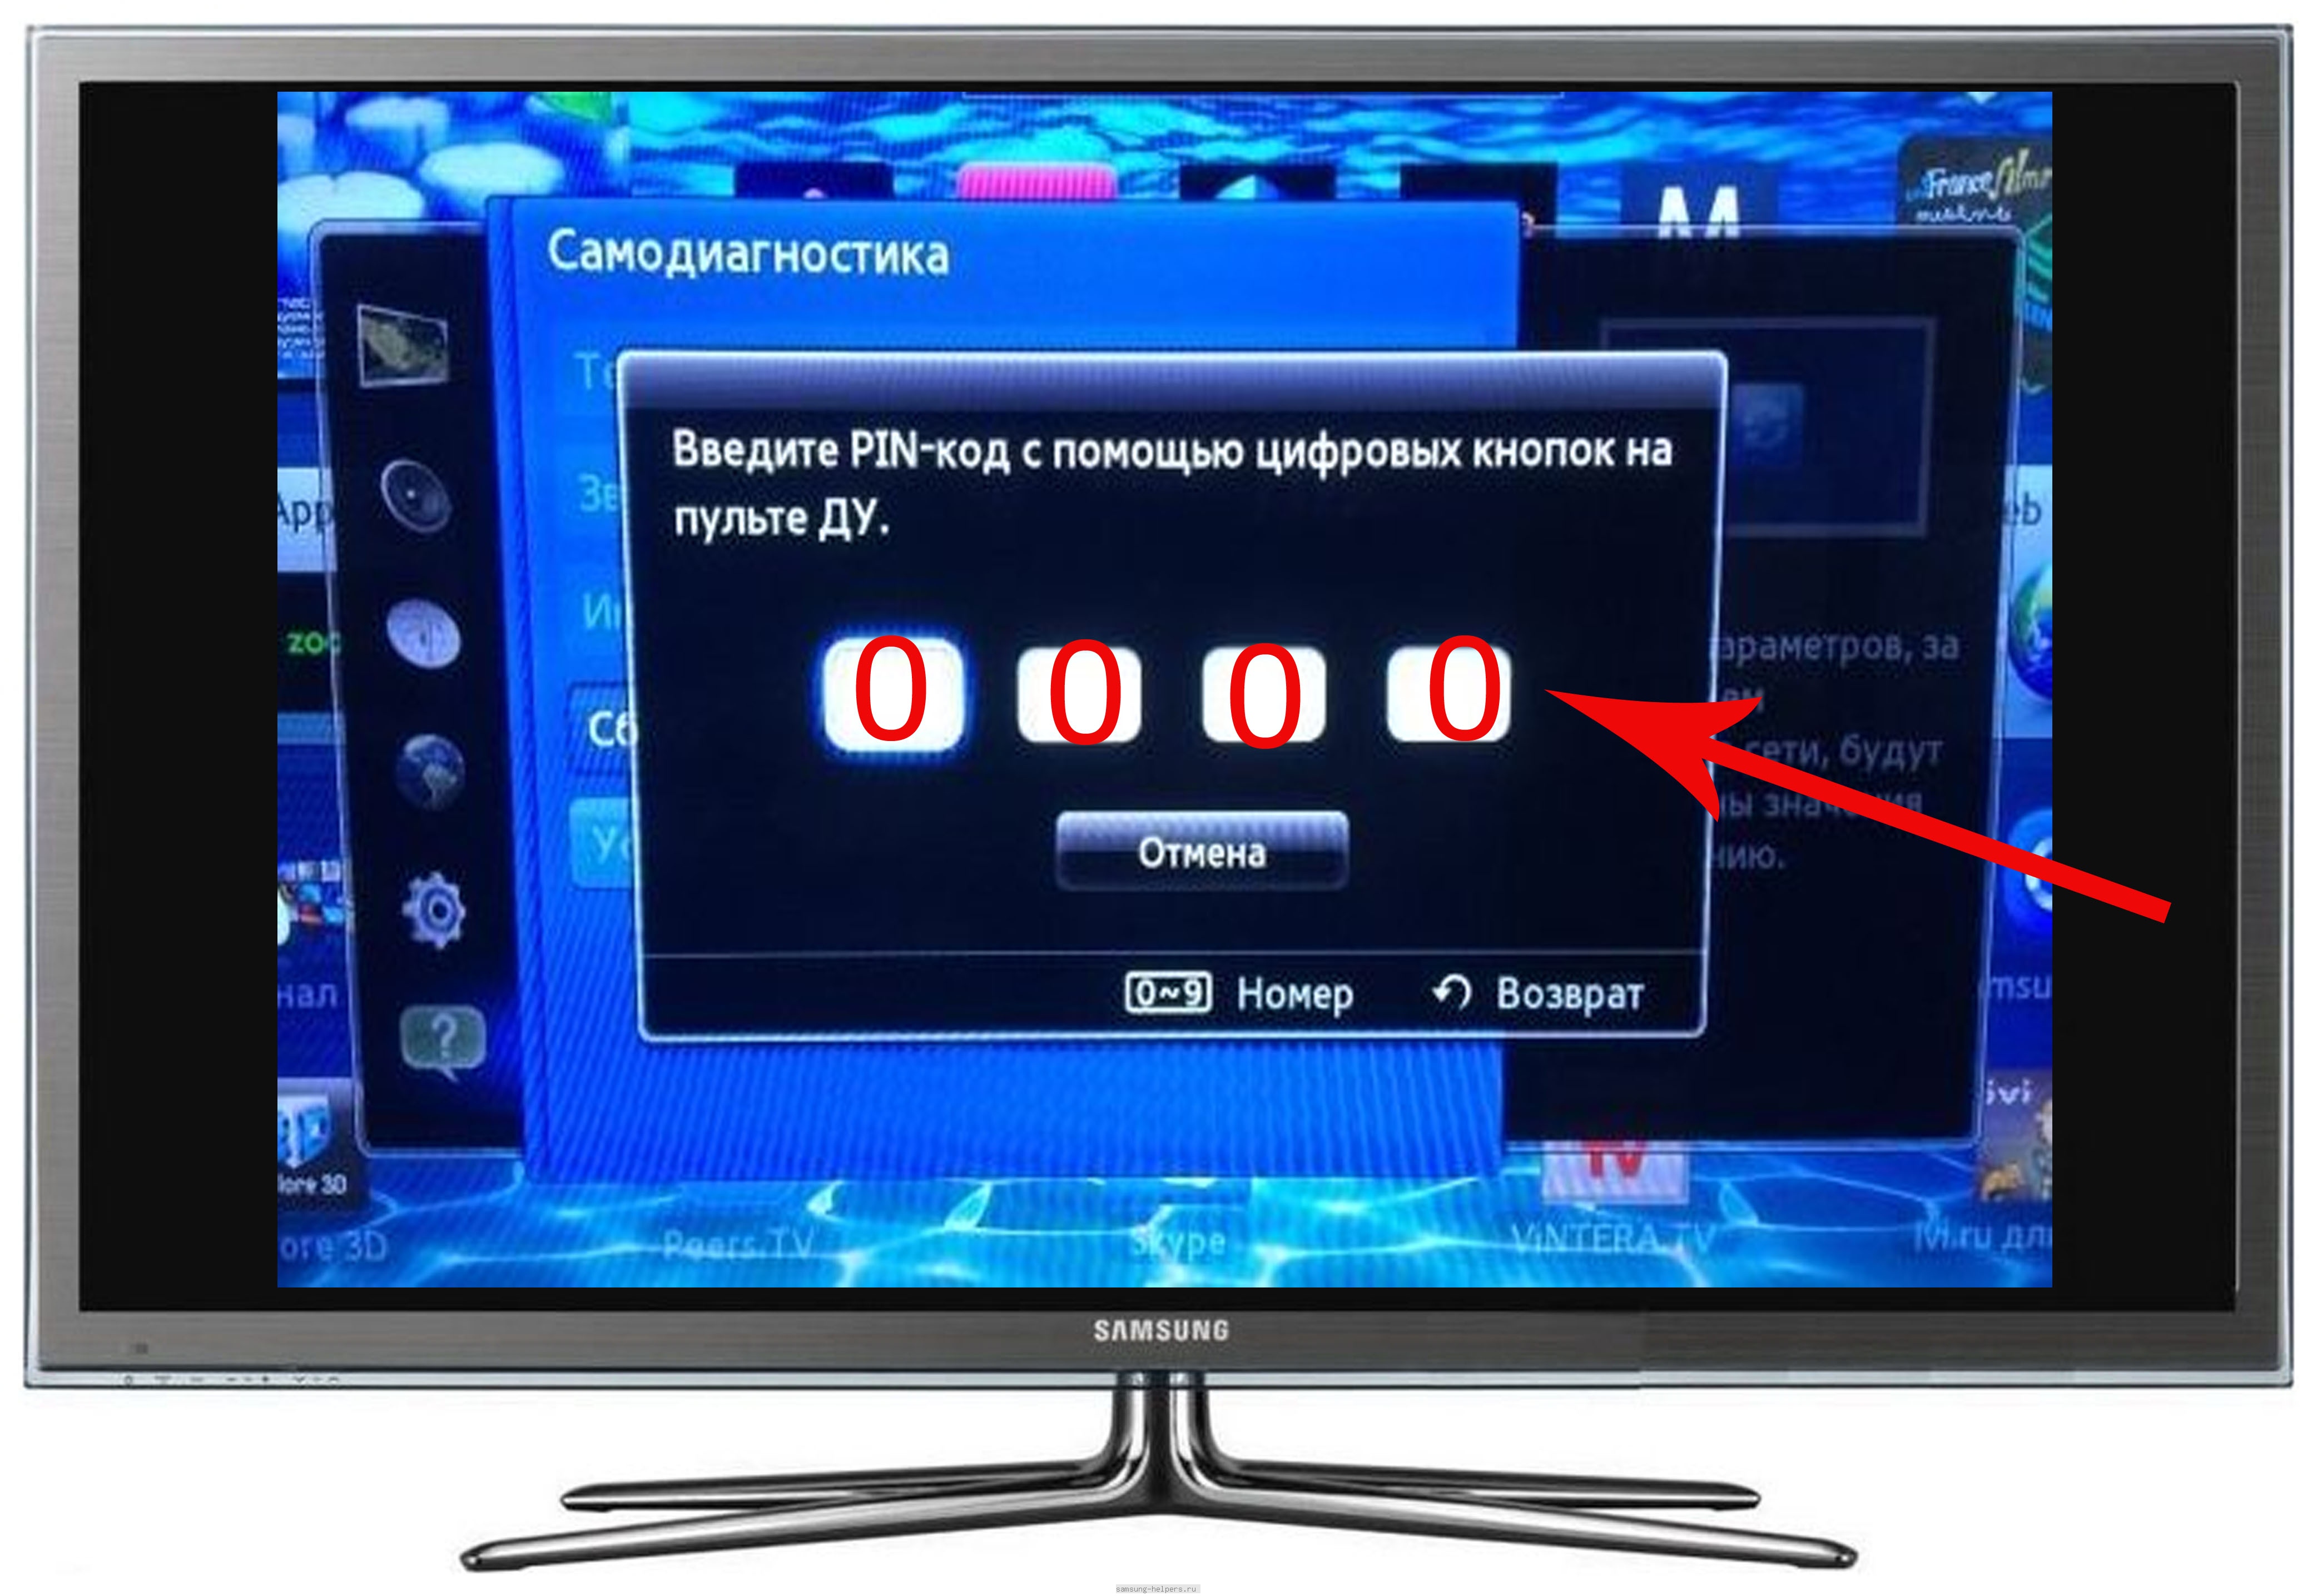 Как установить пароль на телевизор. Код для смарт ТВ самсунг телевизора Samsung. Пин код телевизора Samsung Smart TV. Разблокировка телевизора. Пин код на телевизоре самсунг.